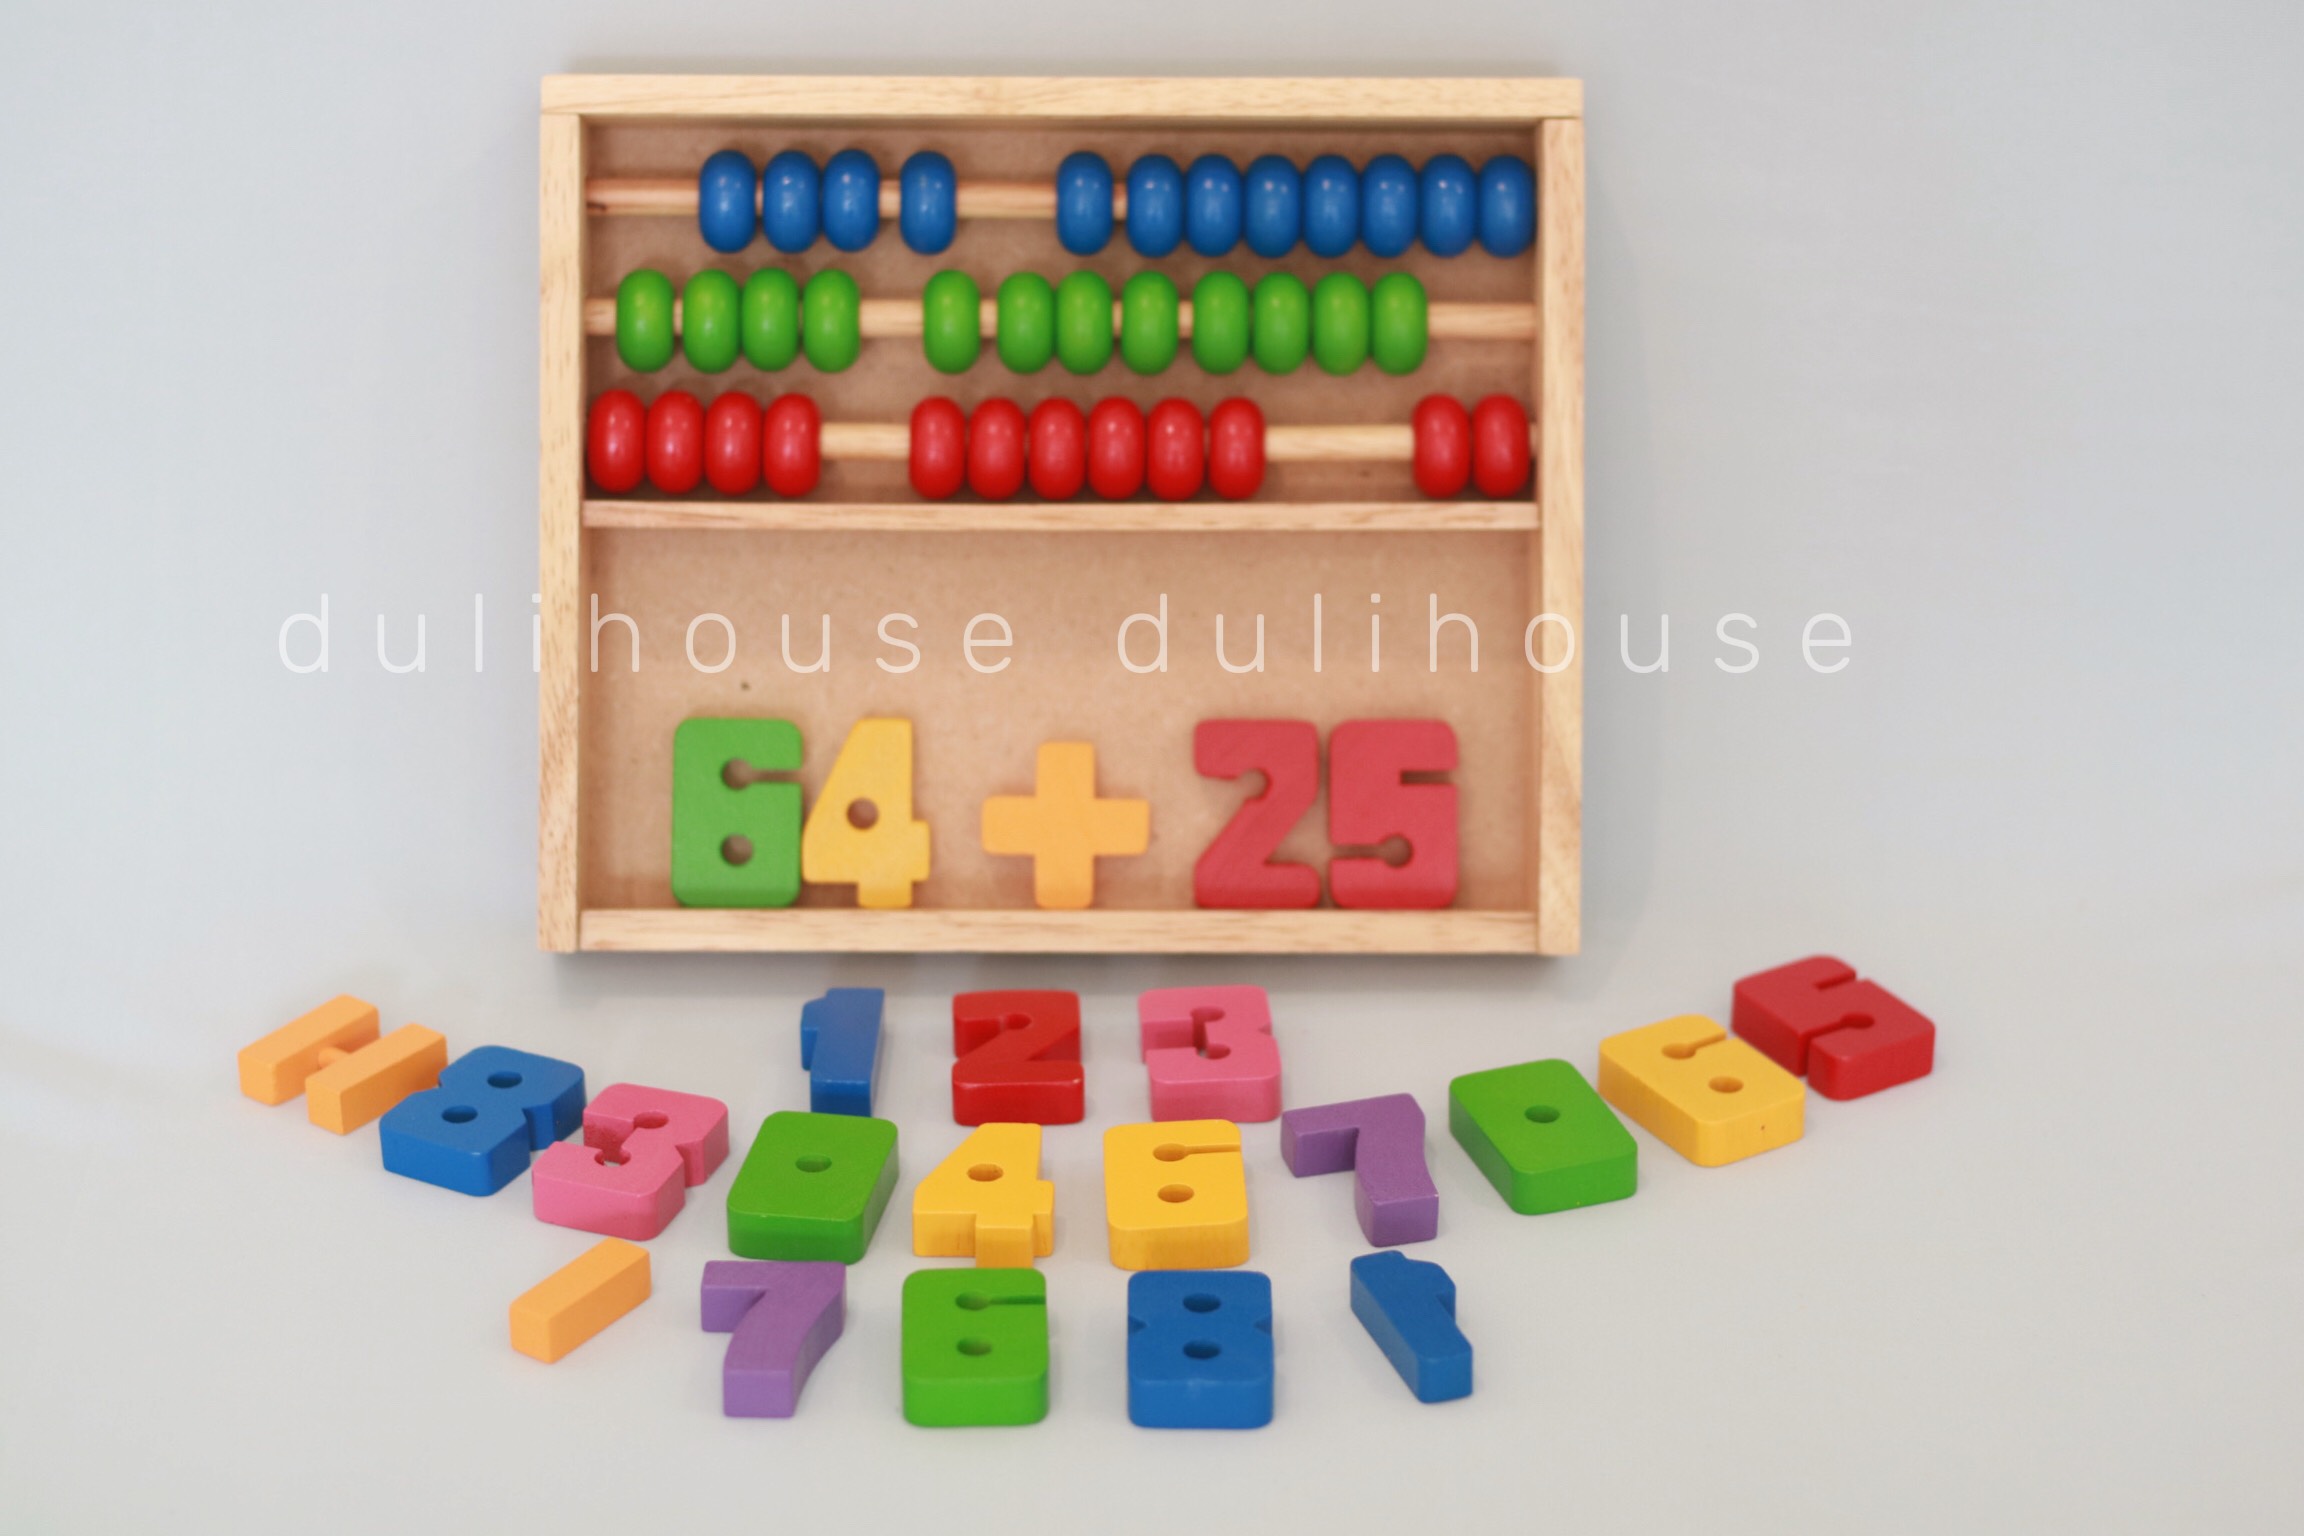 Đồ chơi gỗ cao cấp Bảng tính học đếm, giúp bé học đếm, nhận biết chữ số & thực hiện các phép toán cộng, trừ trên bảng tính và trên bộ số từ 0 - 9,  hỗ trợ nâng cao khả năng tư duy và trí thông minh của bé - Sản xuất tại Việt Nam